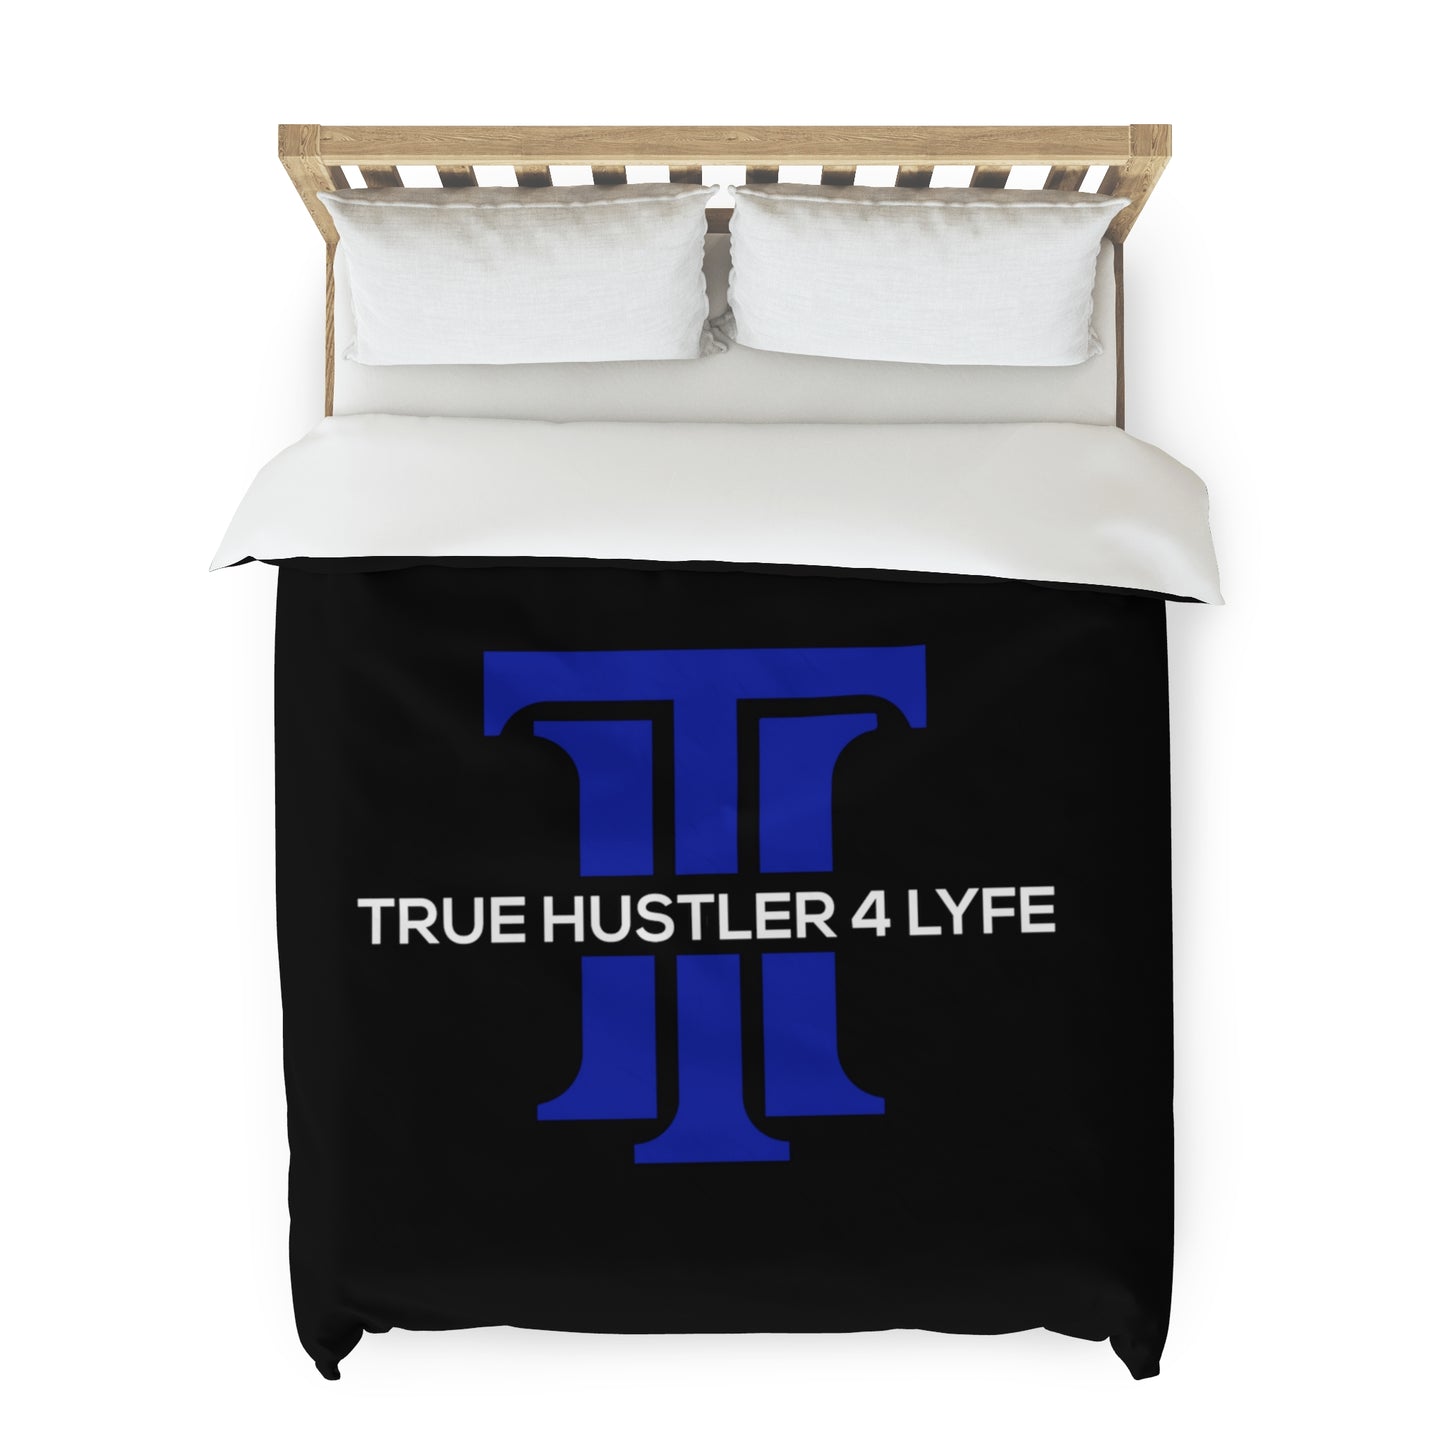 True Hustler 4 Lyfe Signature Duvet Cover